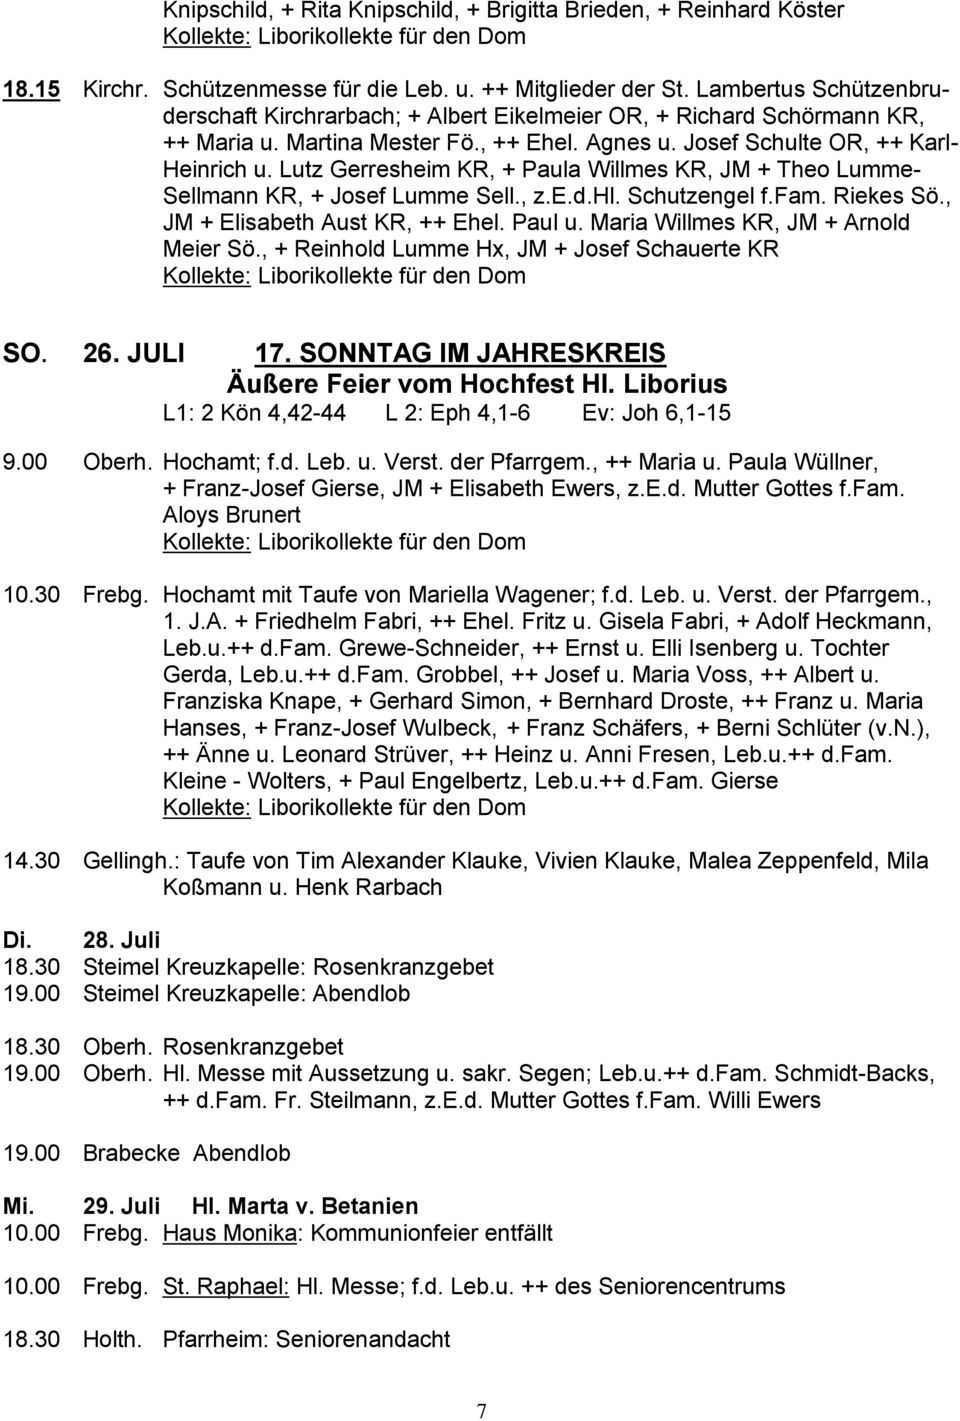 Lutz Gerresheim KR, + Paula Willmes KR, JM + Theo Lumme- Sellmann KR, + Josef Lumme Sell., z.e.d.hl. Schutzengel f.fam. Riekes Sö., JM + Elisabeth Aust KR, ++ Ehel. Paul u.